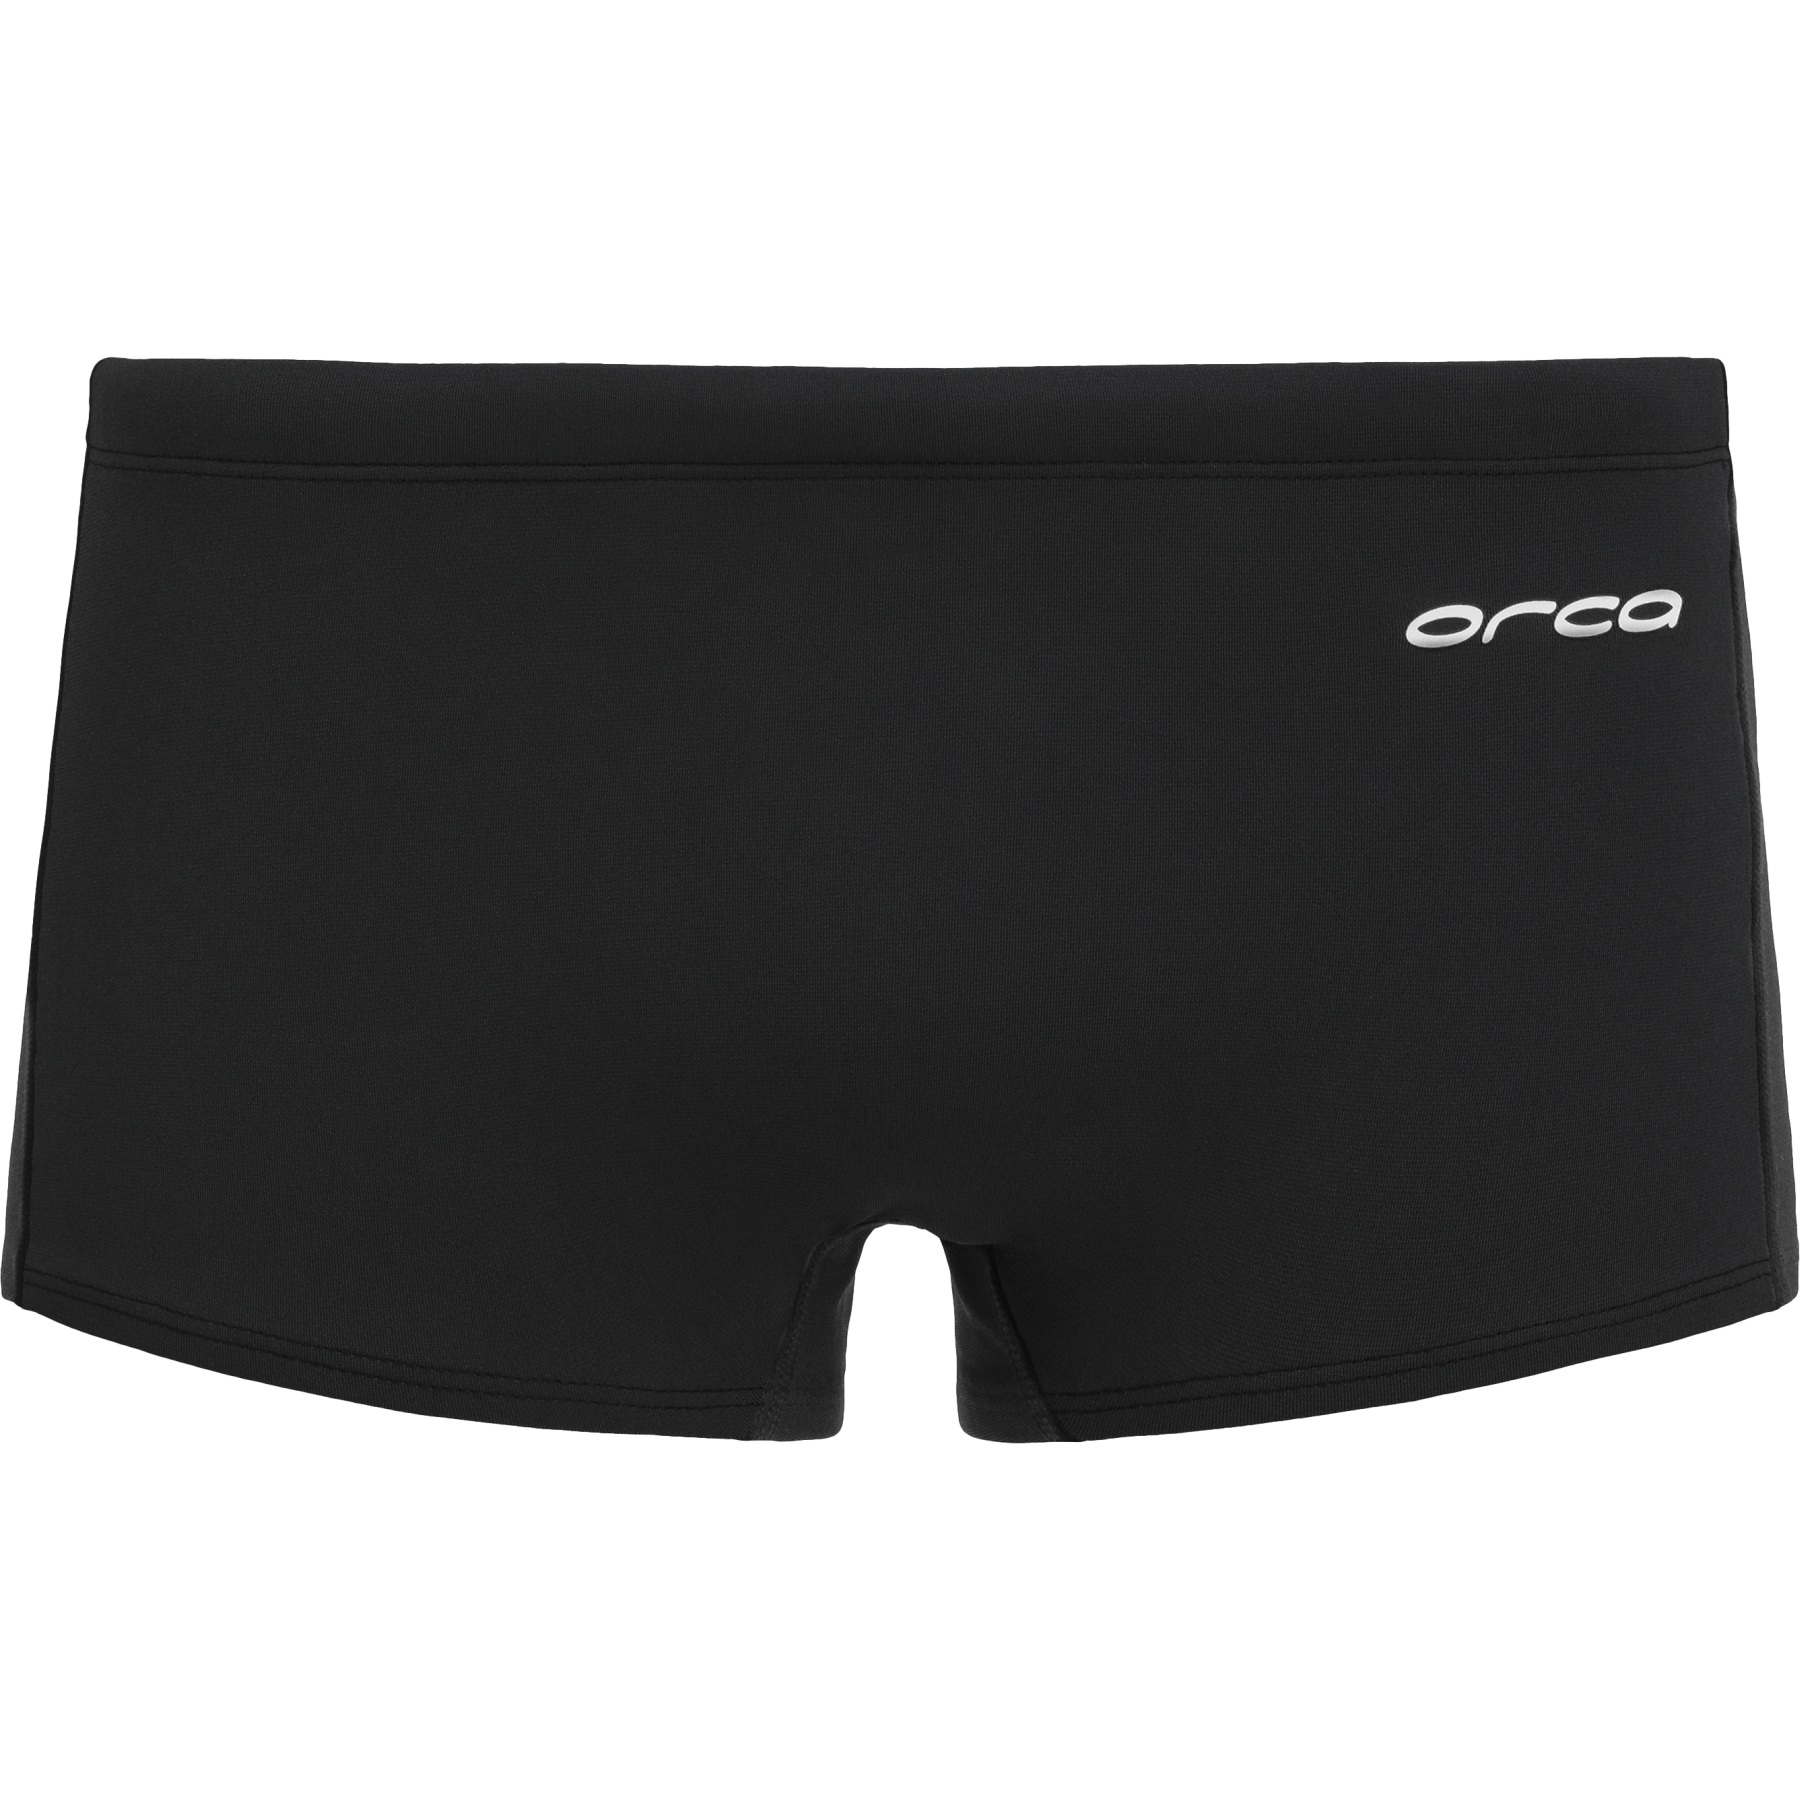 Productfoto van Orca Core Square Leg Swim Shorts - black MS18